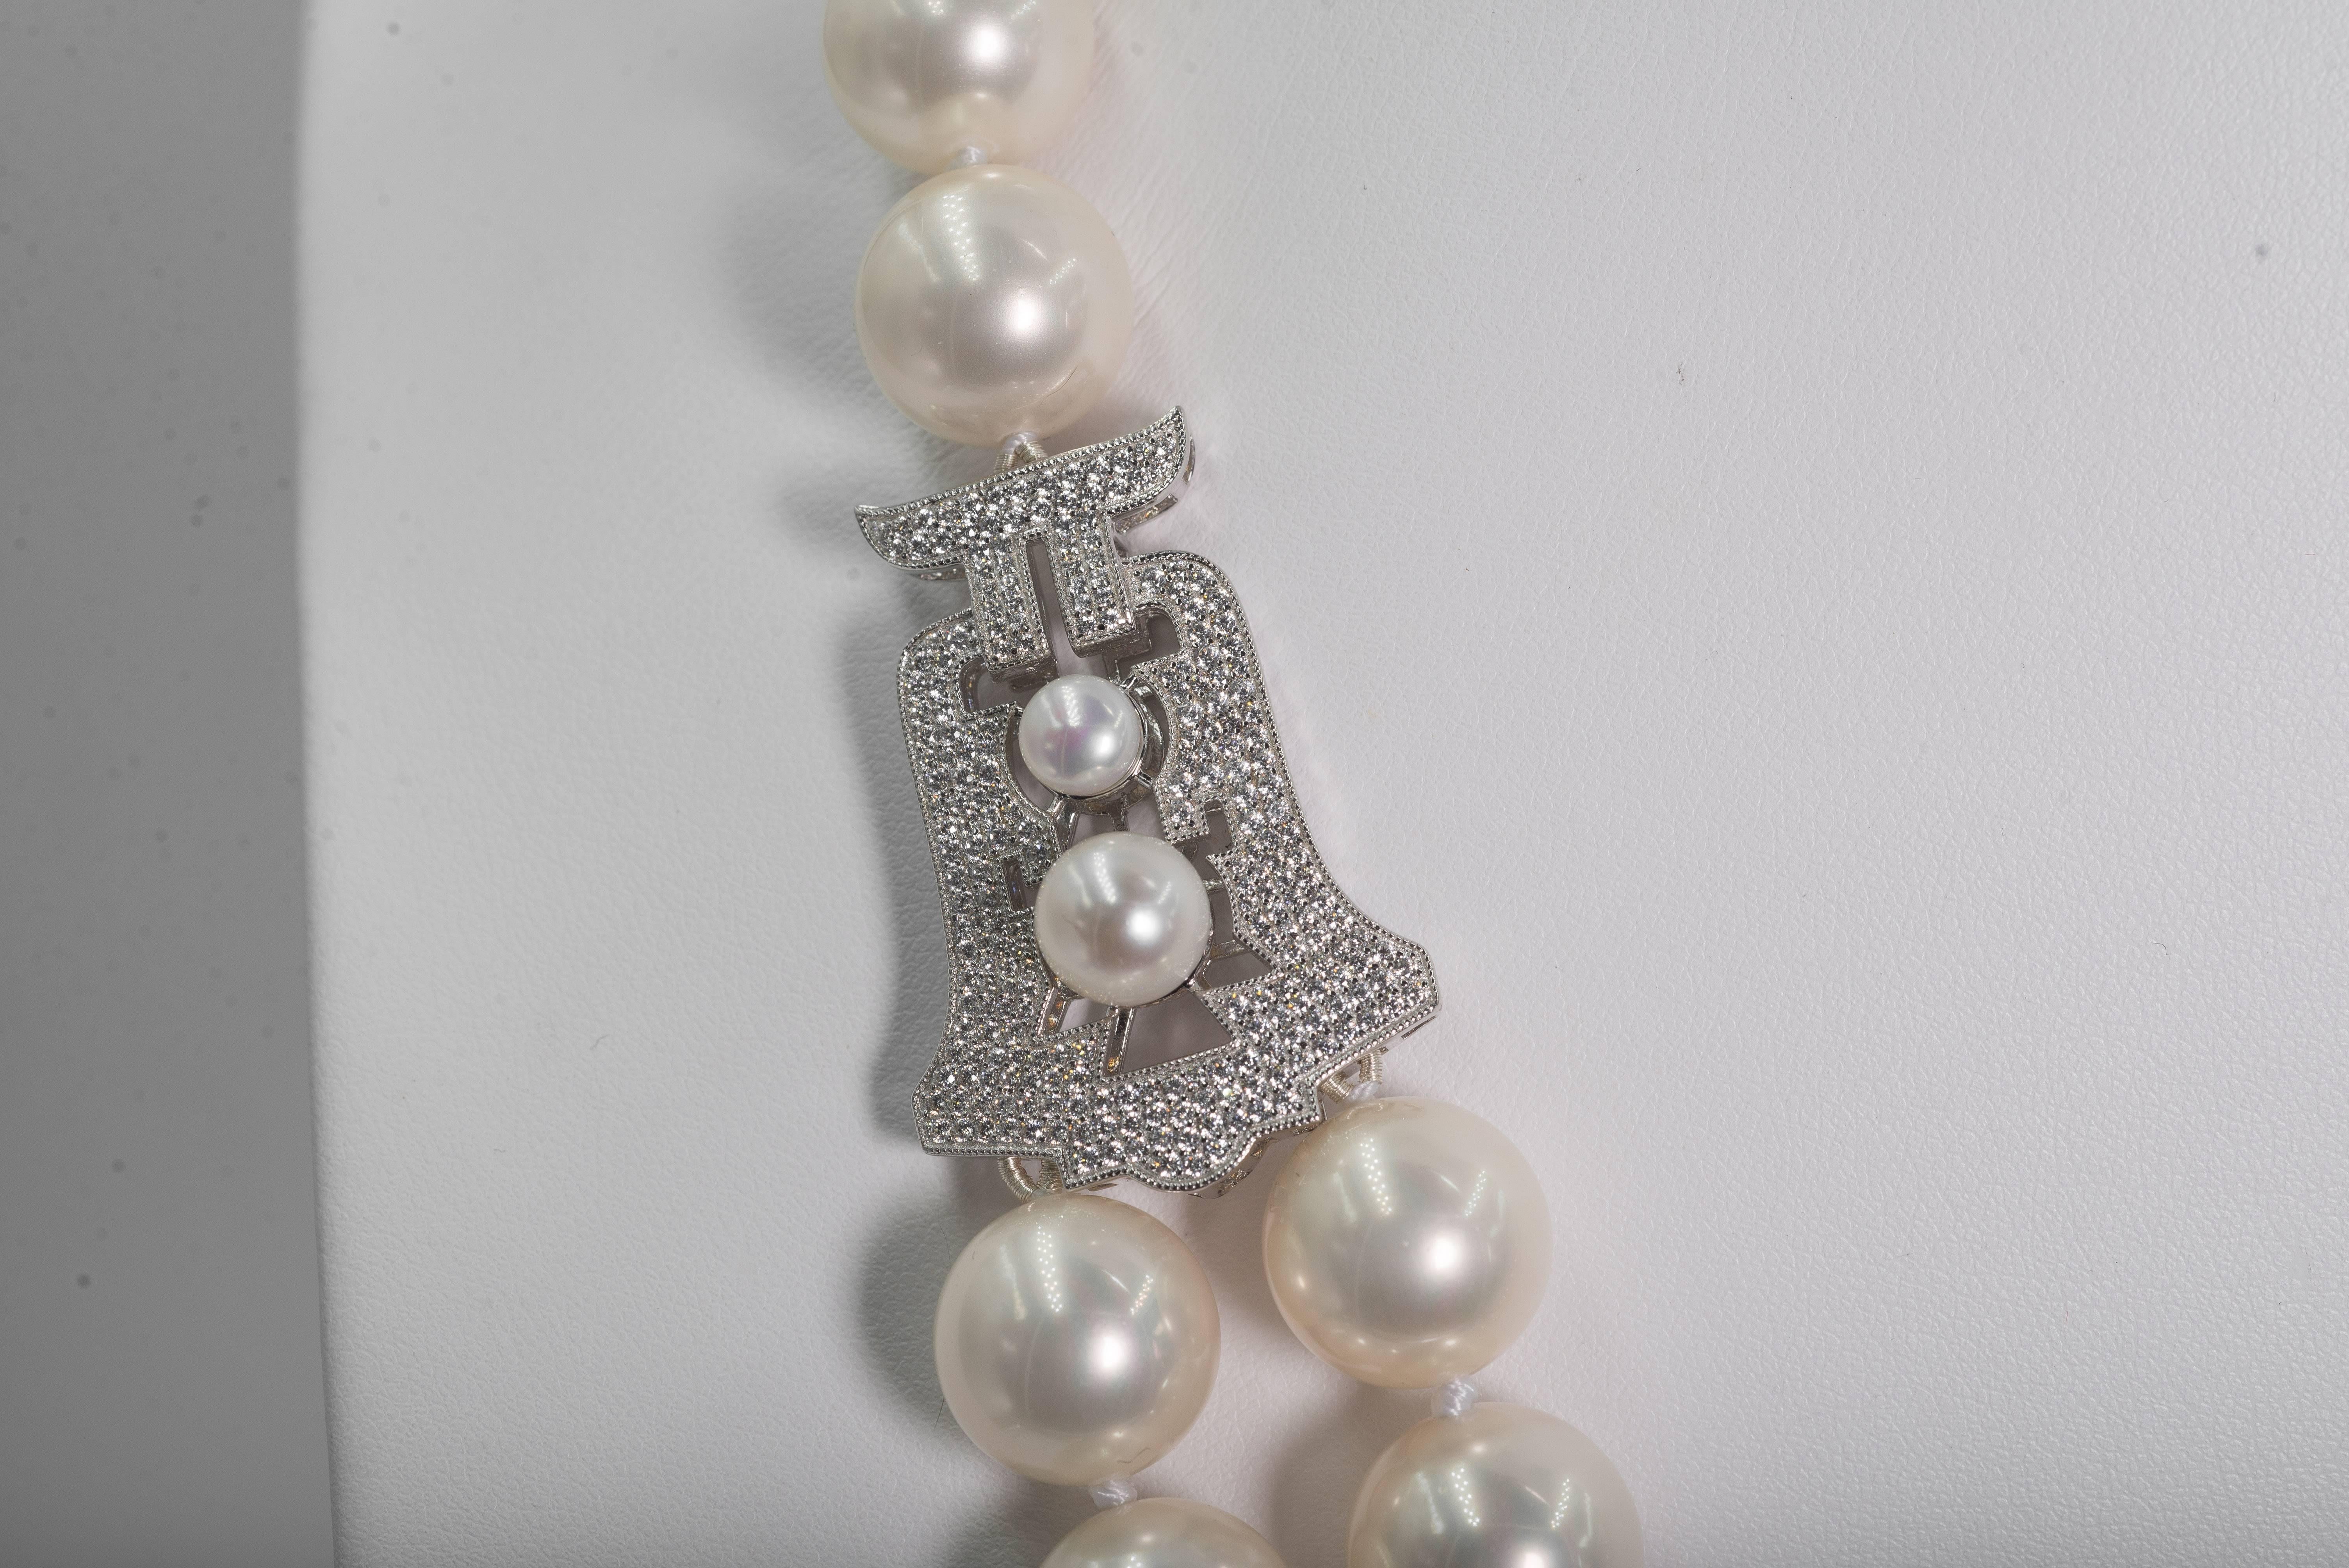 audrey hepburn pearl necklace